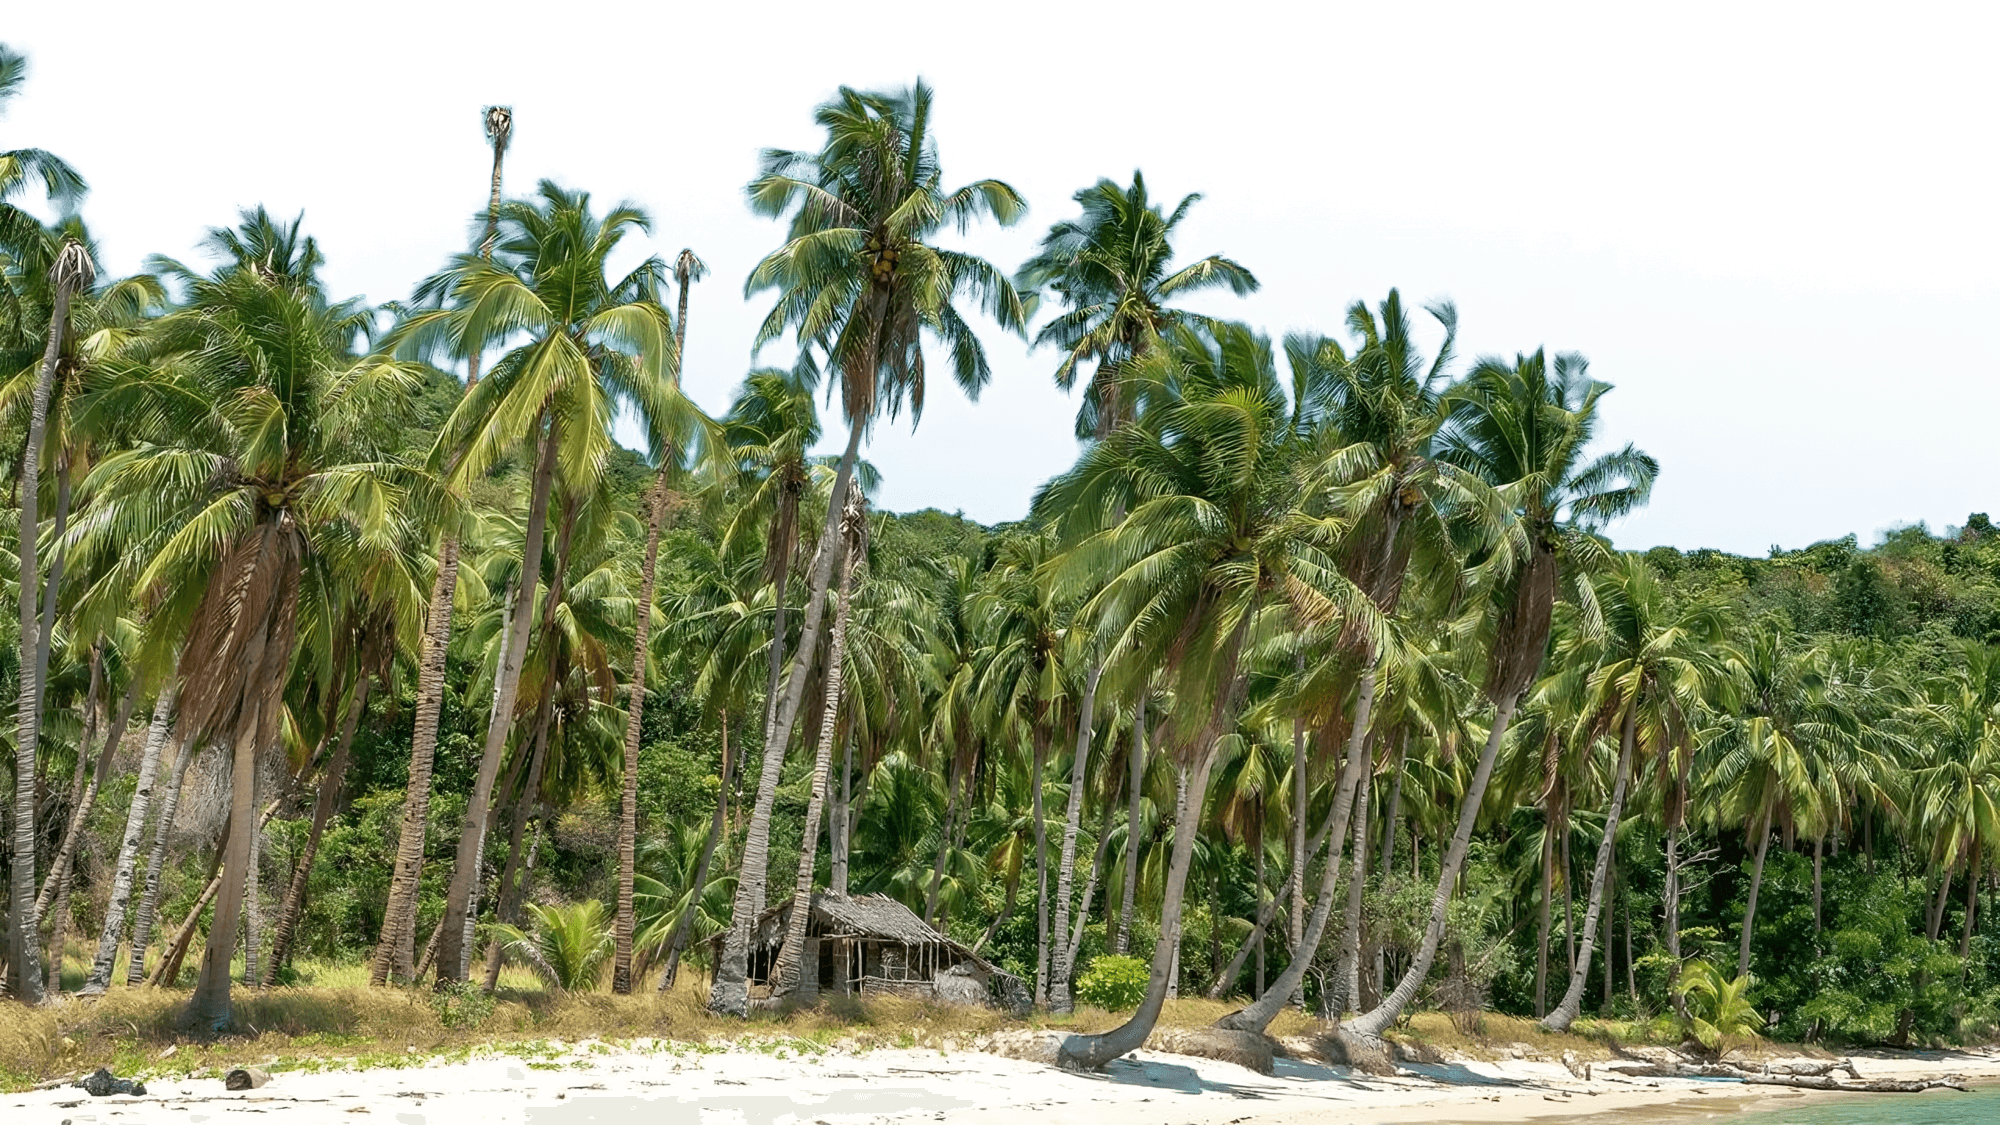 Coco trees